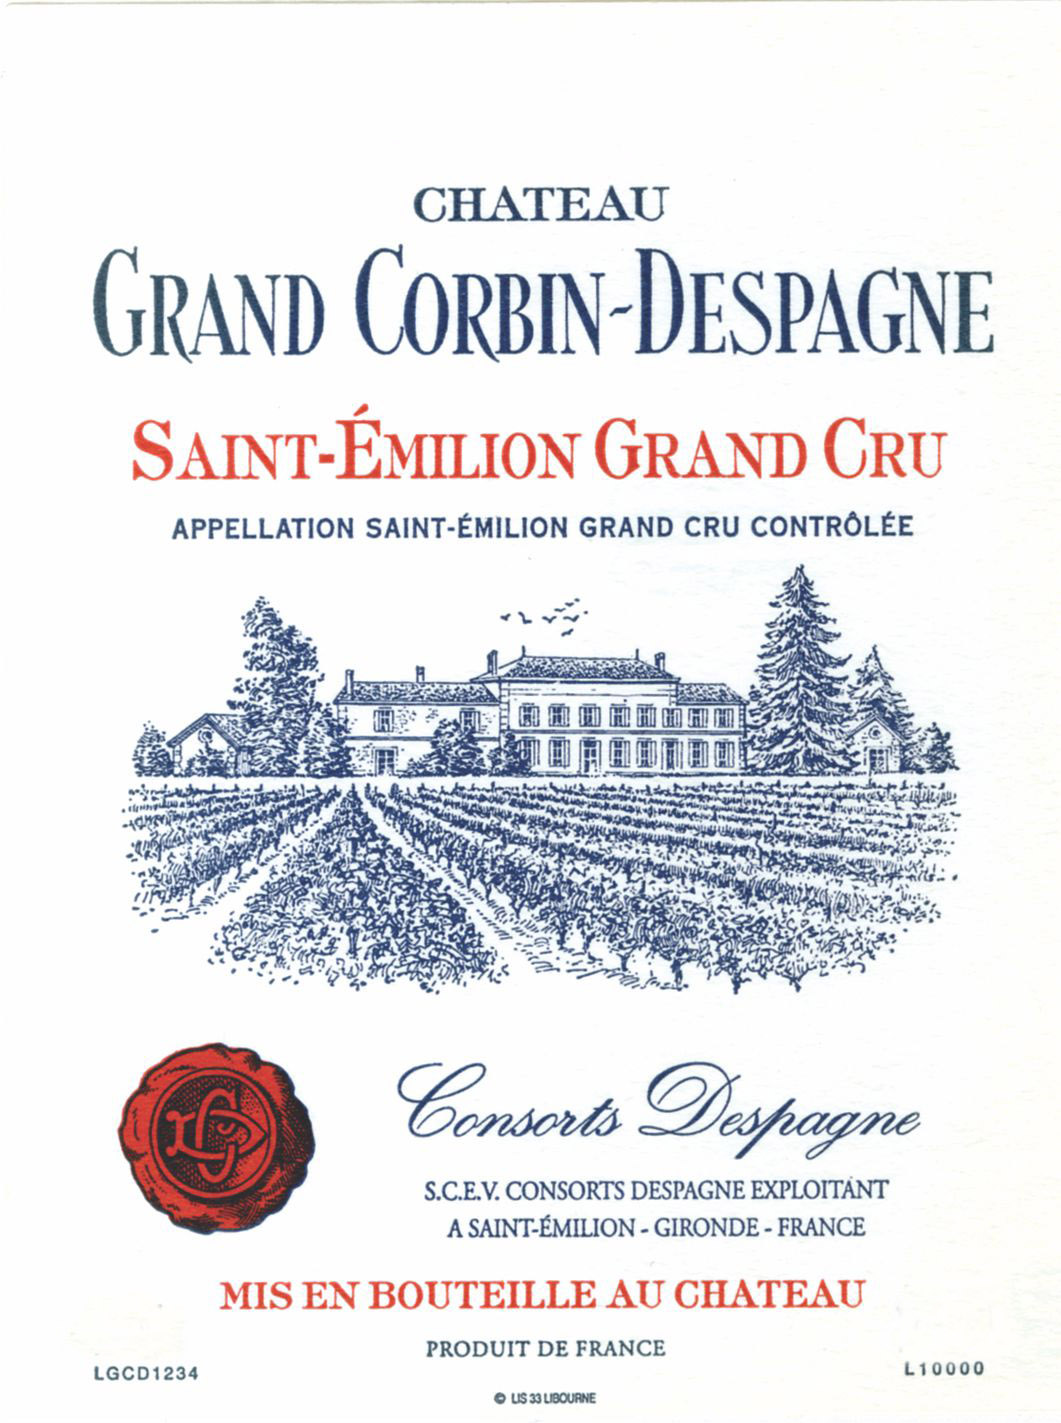 Chateau Grand Corbin-Despagne label